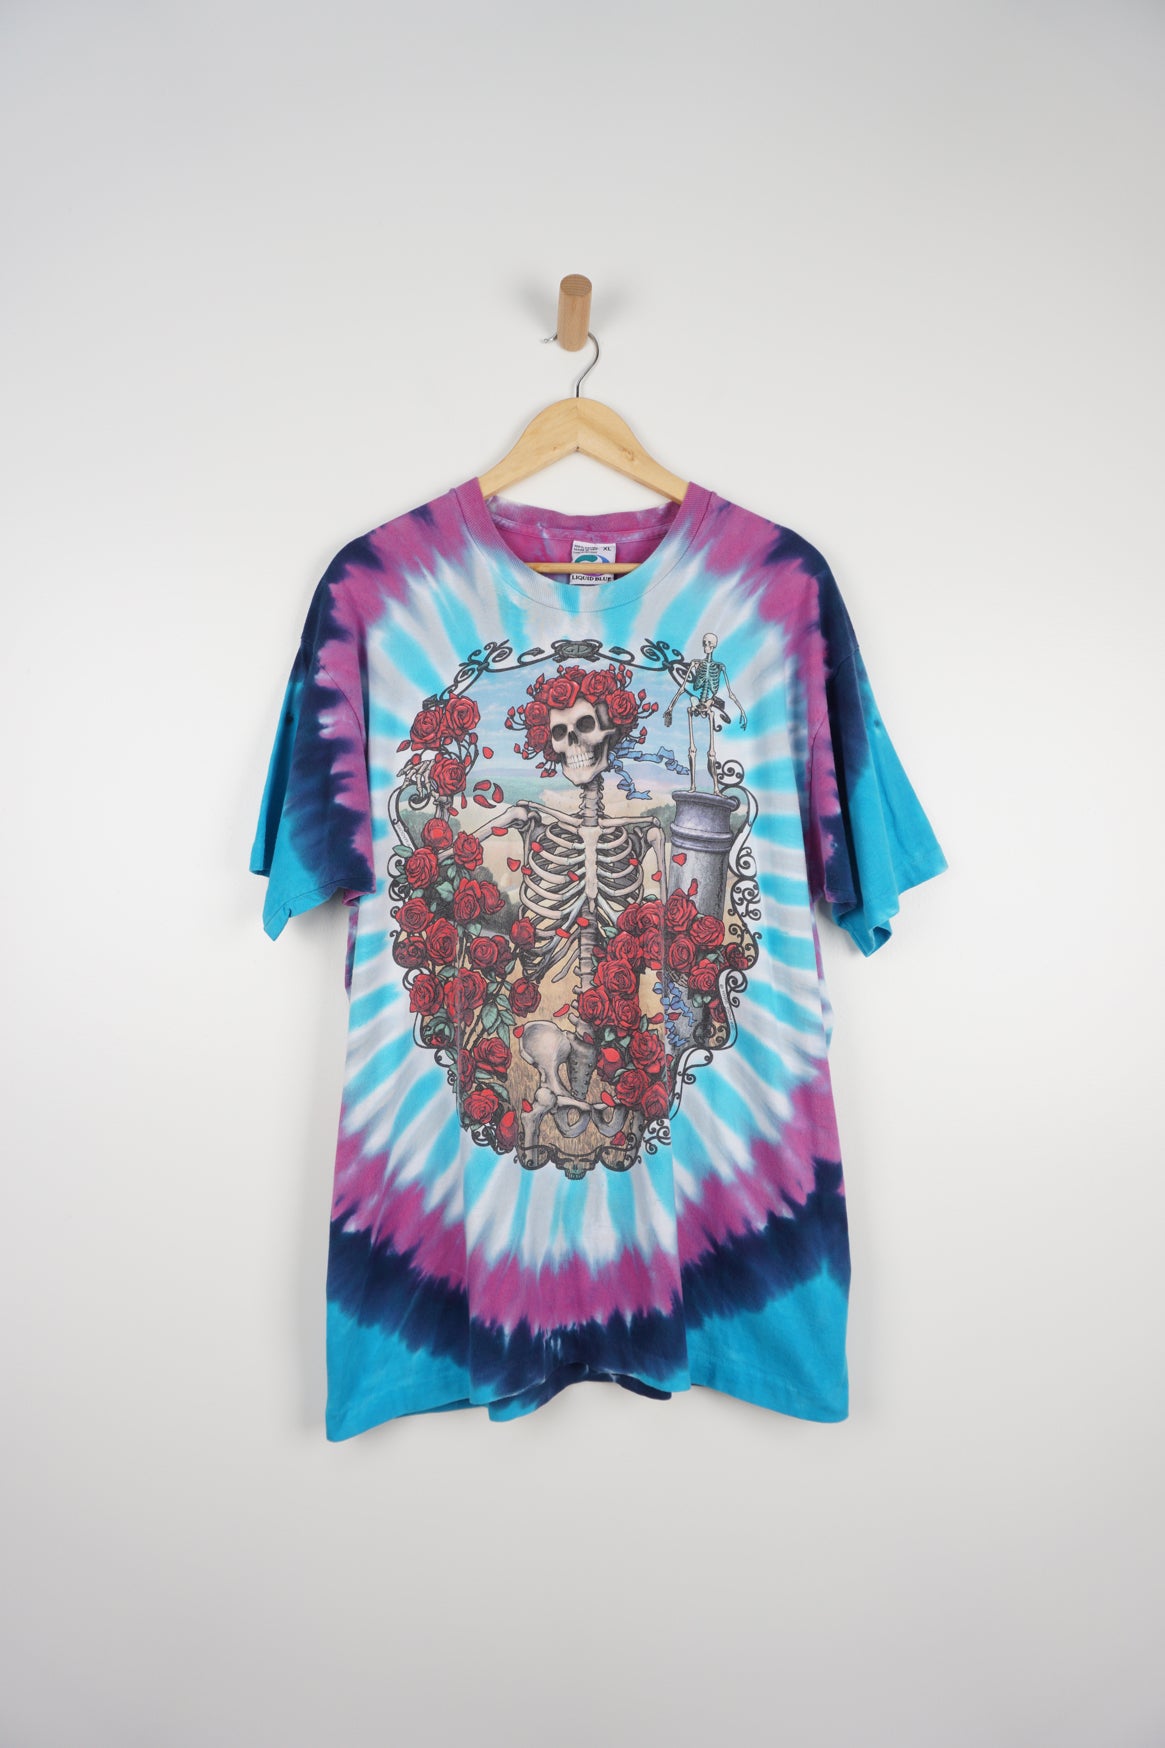 Grateful Dead All Around The World Tie Dye T-Shirt XL Multi